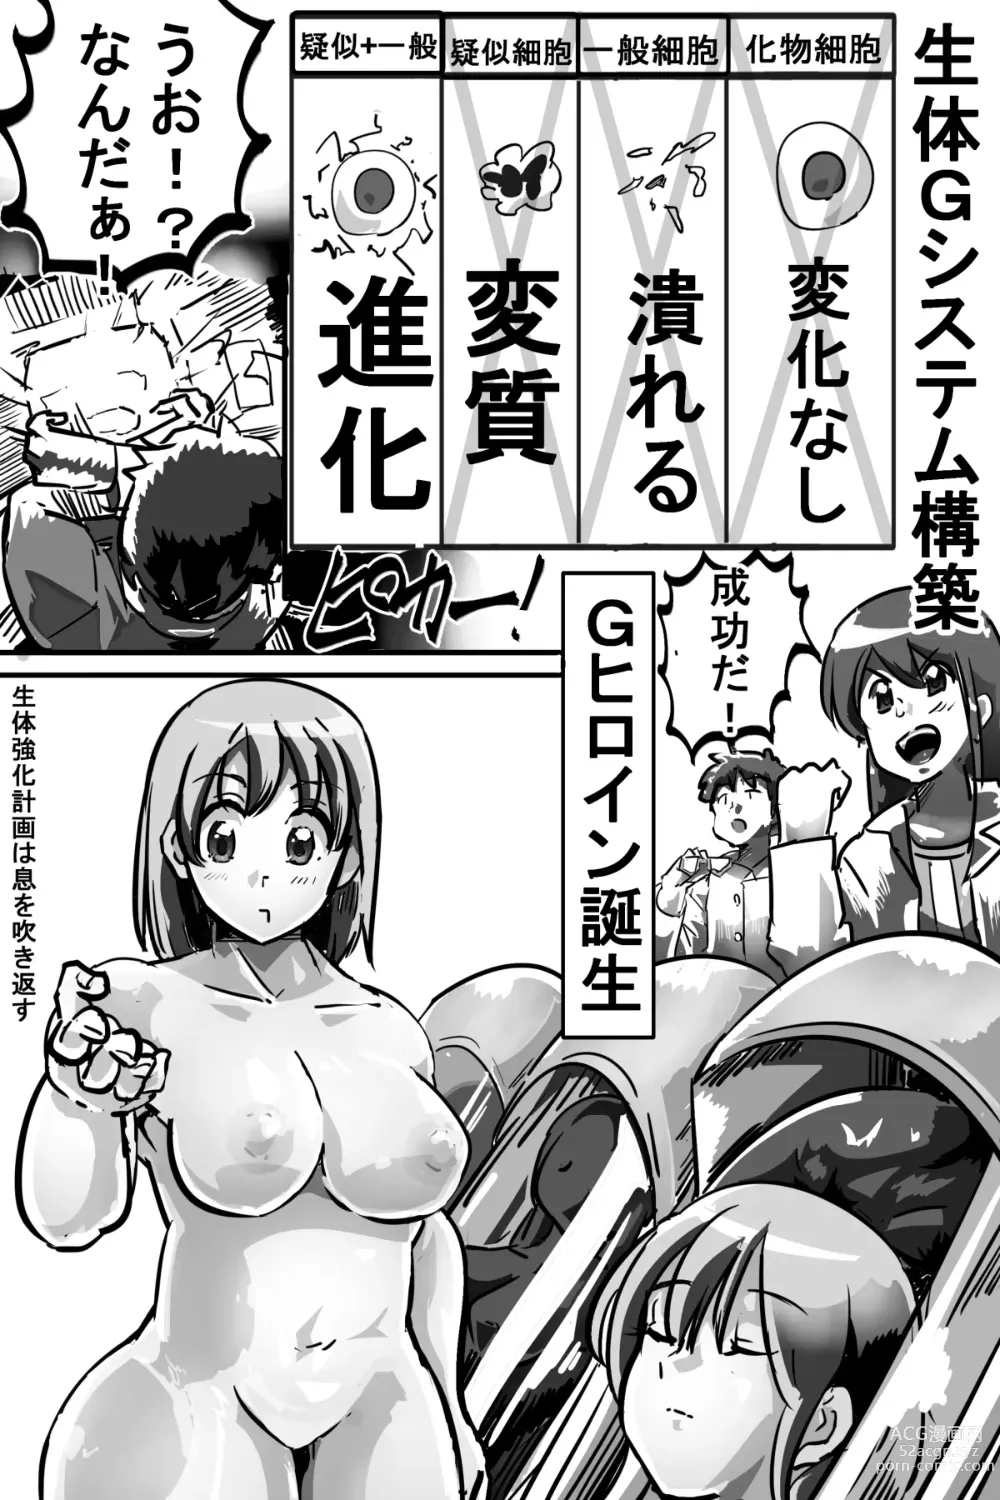 Page 15 of doujinshi Naedoko ni Sare Haramu Heroine-tachi no Tatakai o Egaku Story